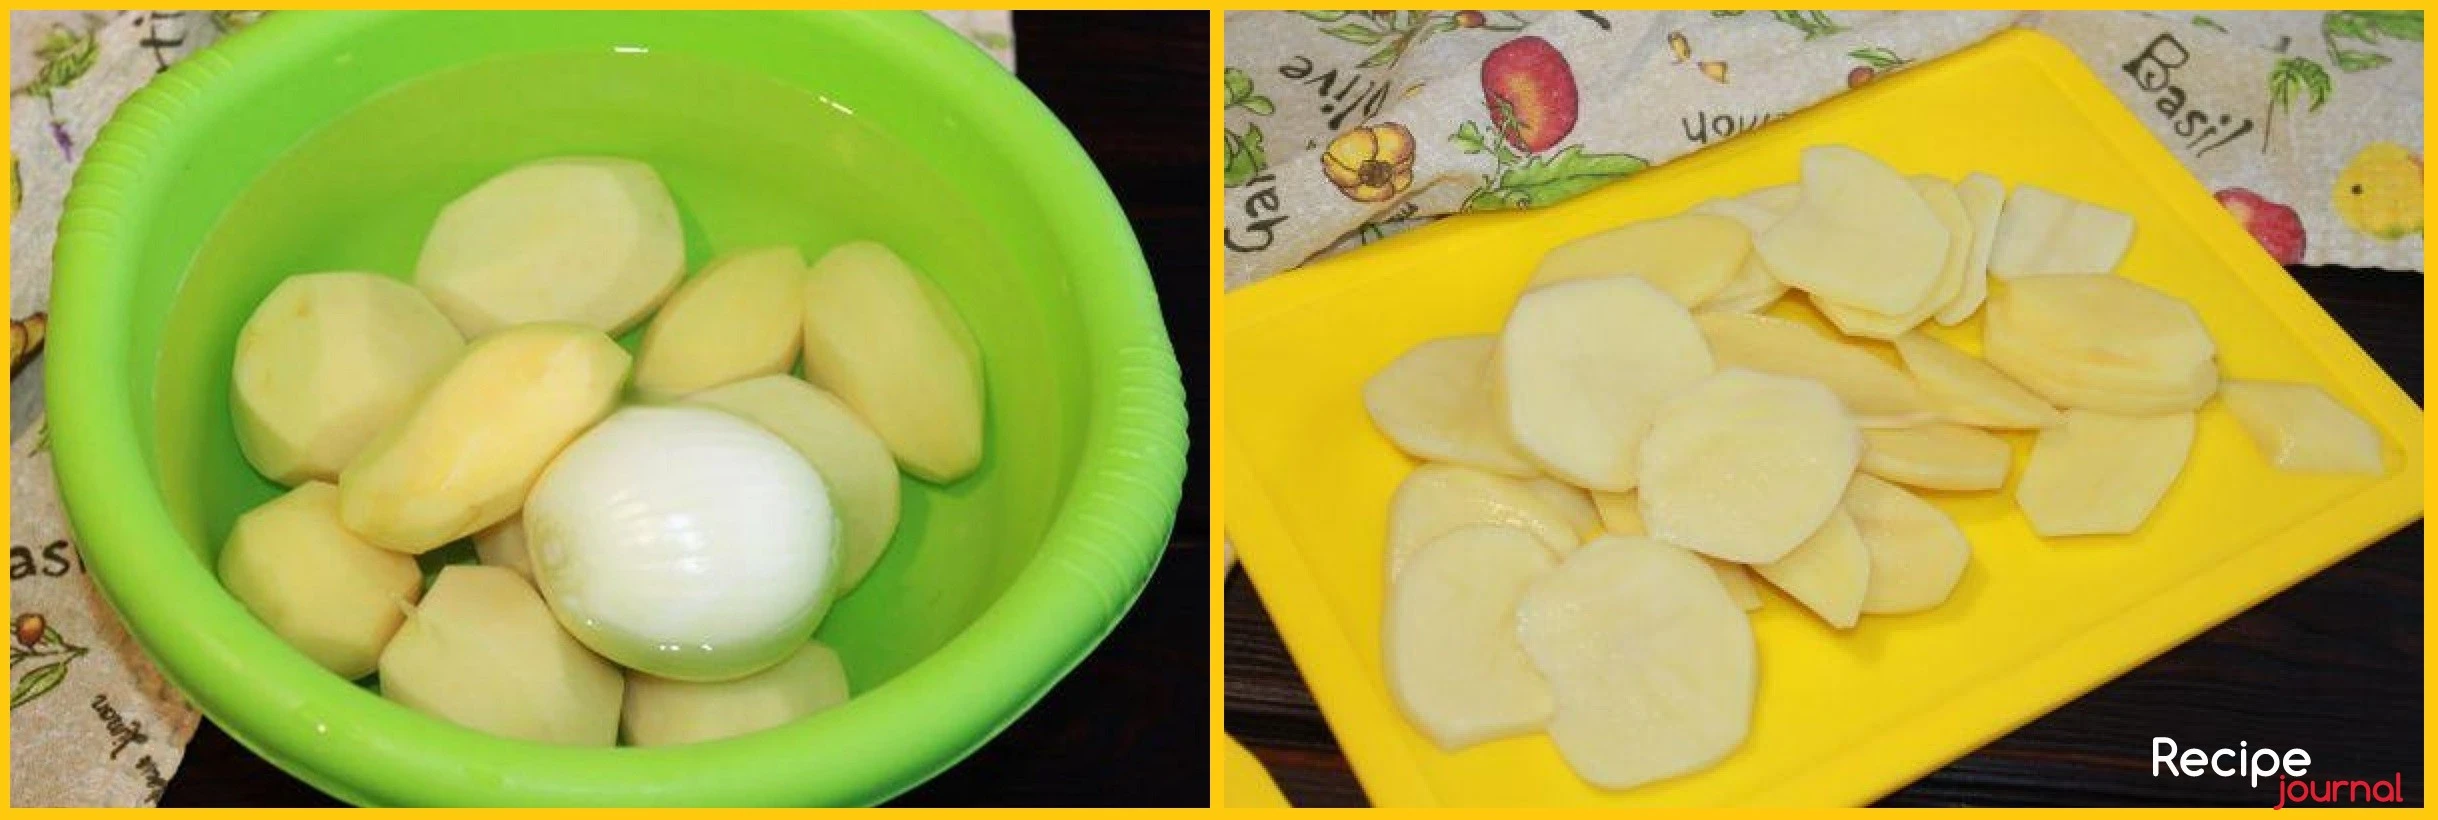 Овощи чистим, картофель нарезаем тонкими слайсами.